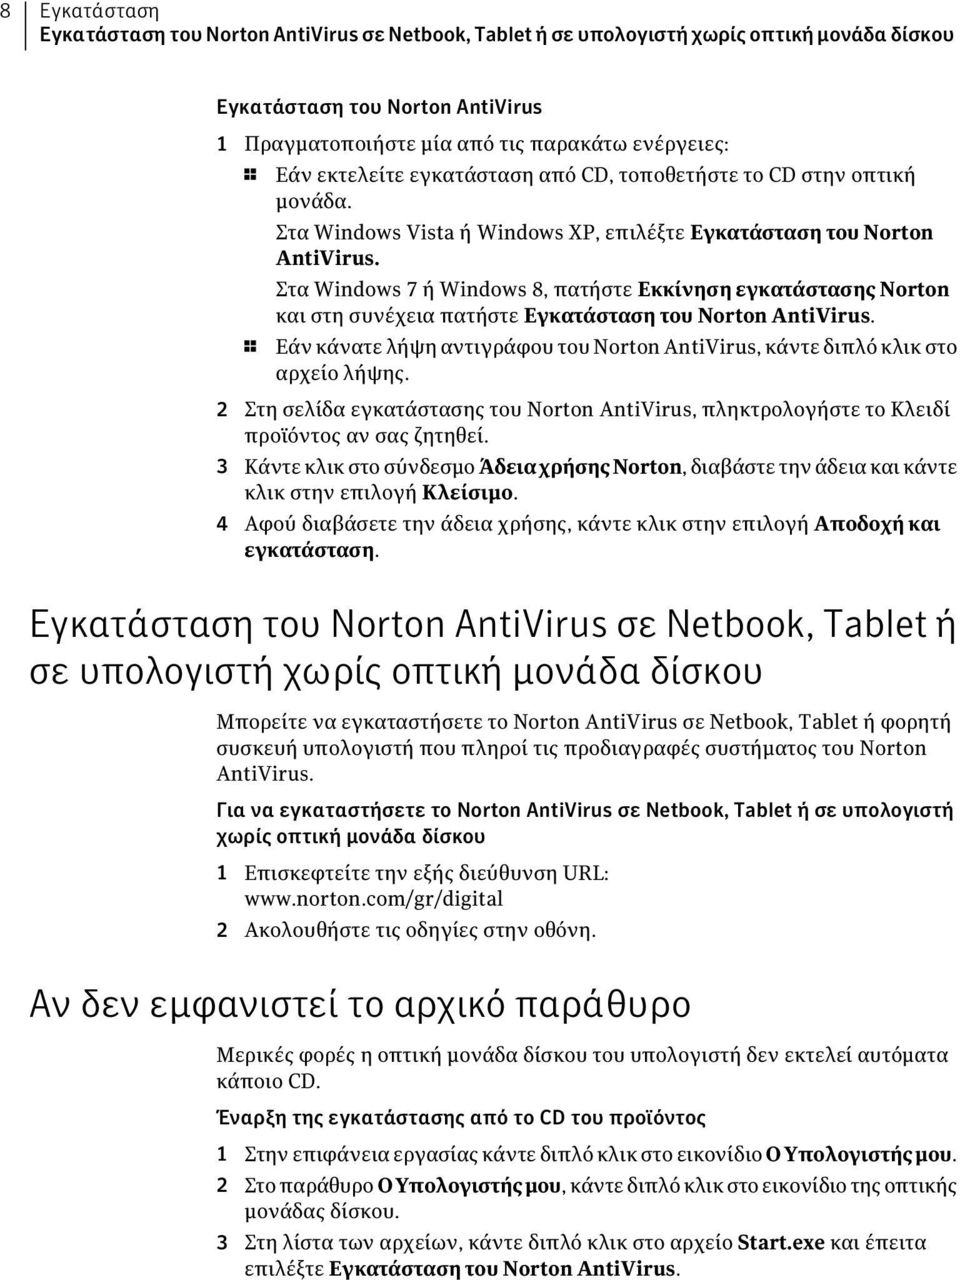 Στα Windows 7 ή Windows 8, πατήστε Εκκίνηση εγκατάστασης Norton και στη συνέχεια πατήστε Εγκατάσταση του Norton AntiVirus.